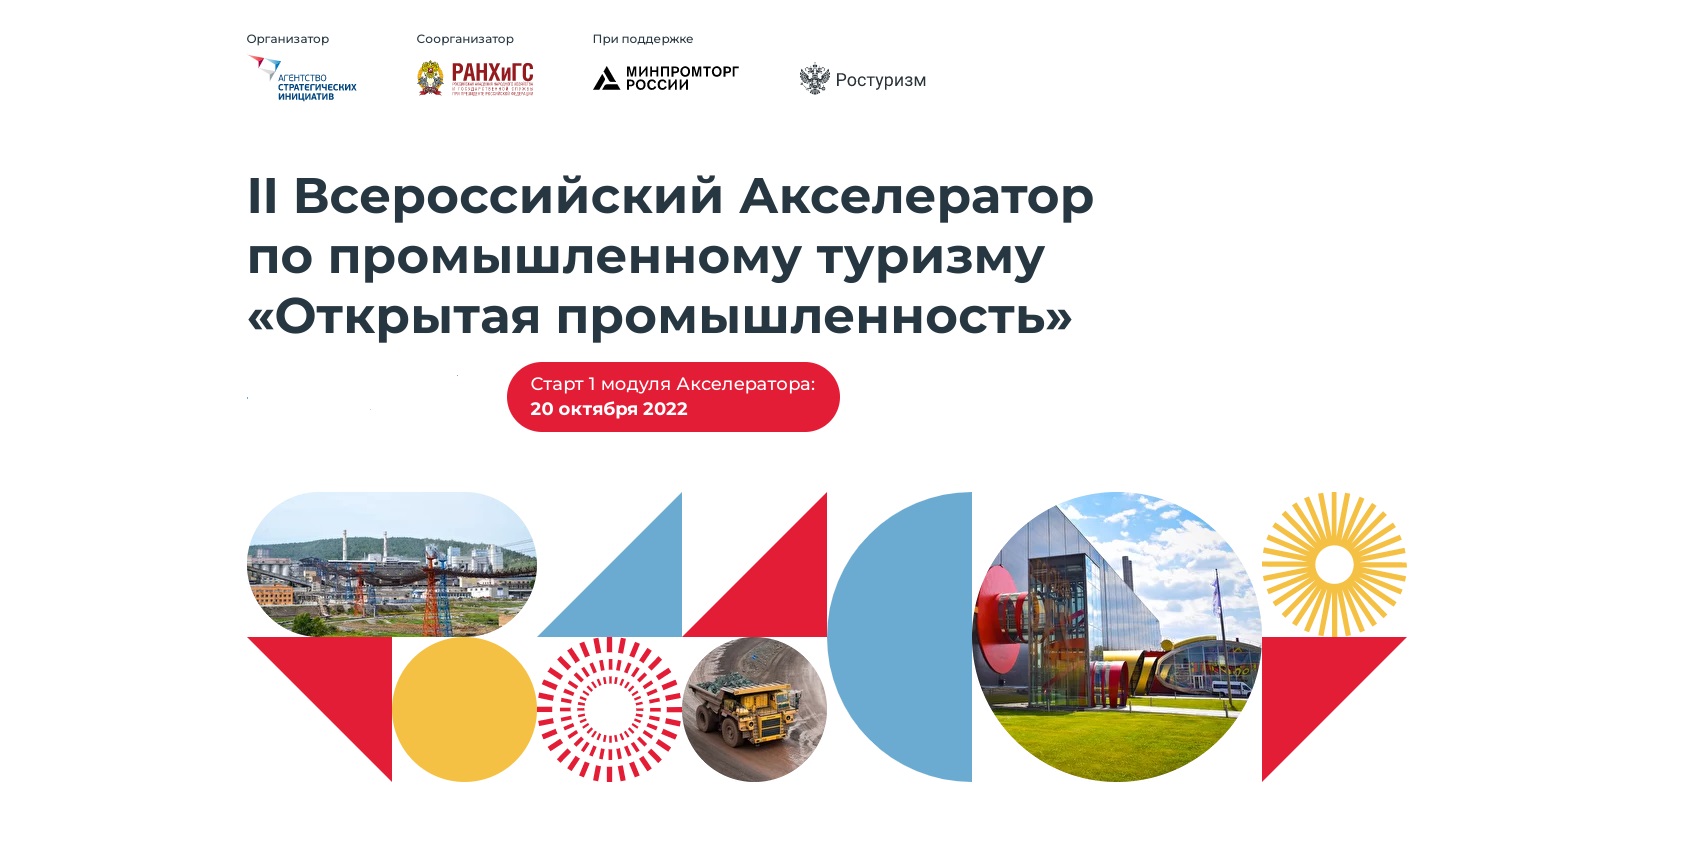 Предприятия Ярославской области станут участниками программы по развитию промышленного туризма